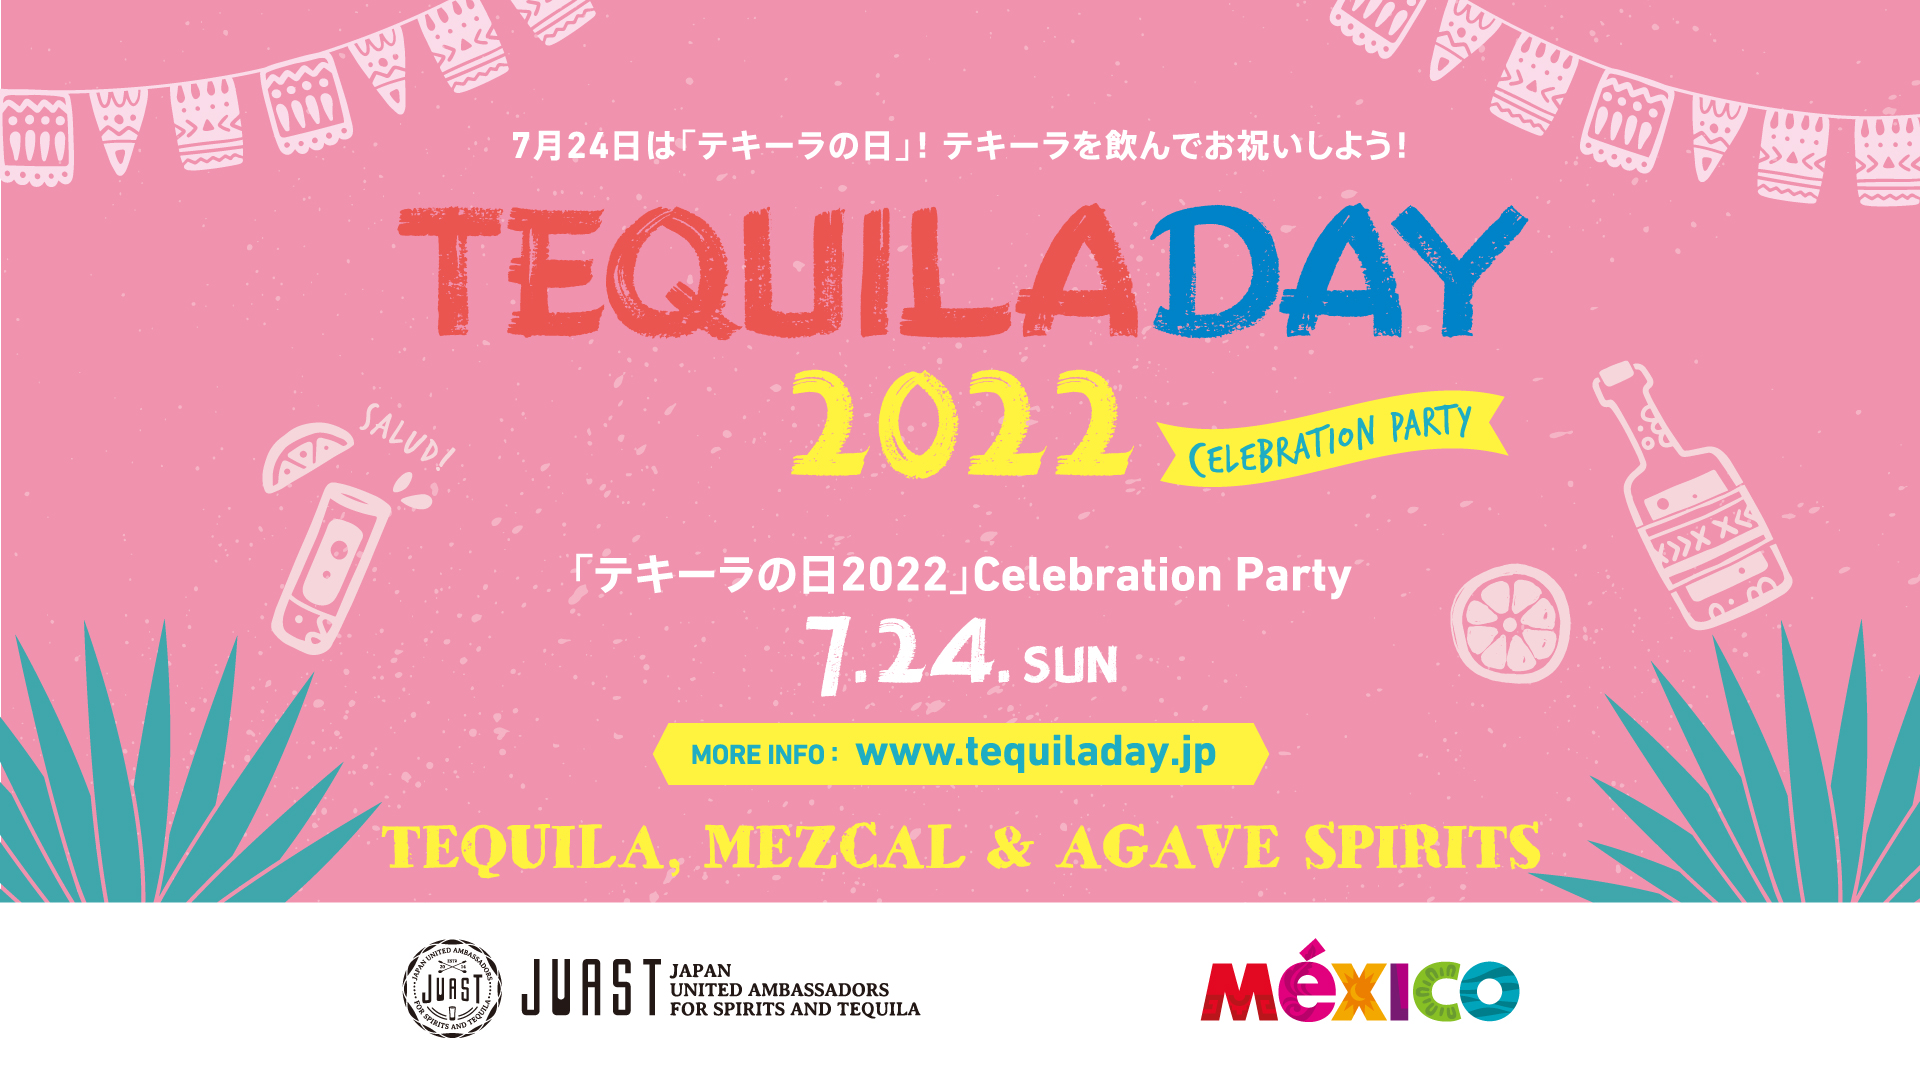 「テキーラの日」Celebration Party 2022